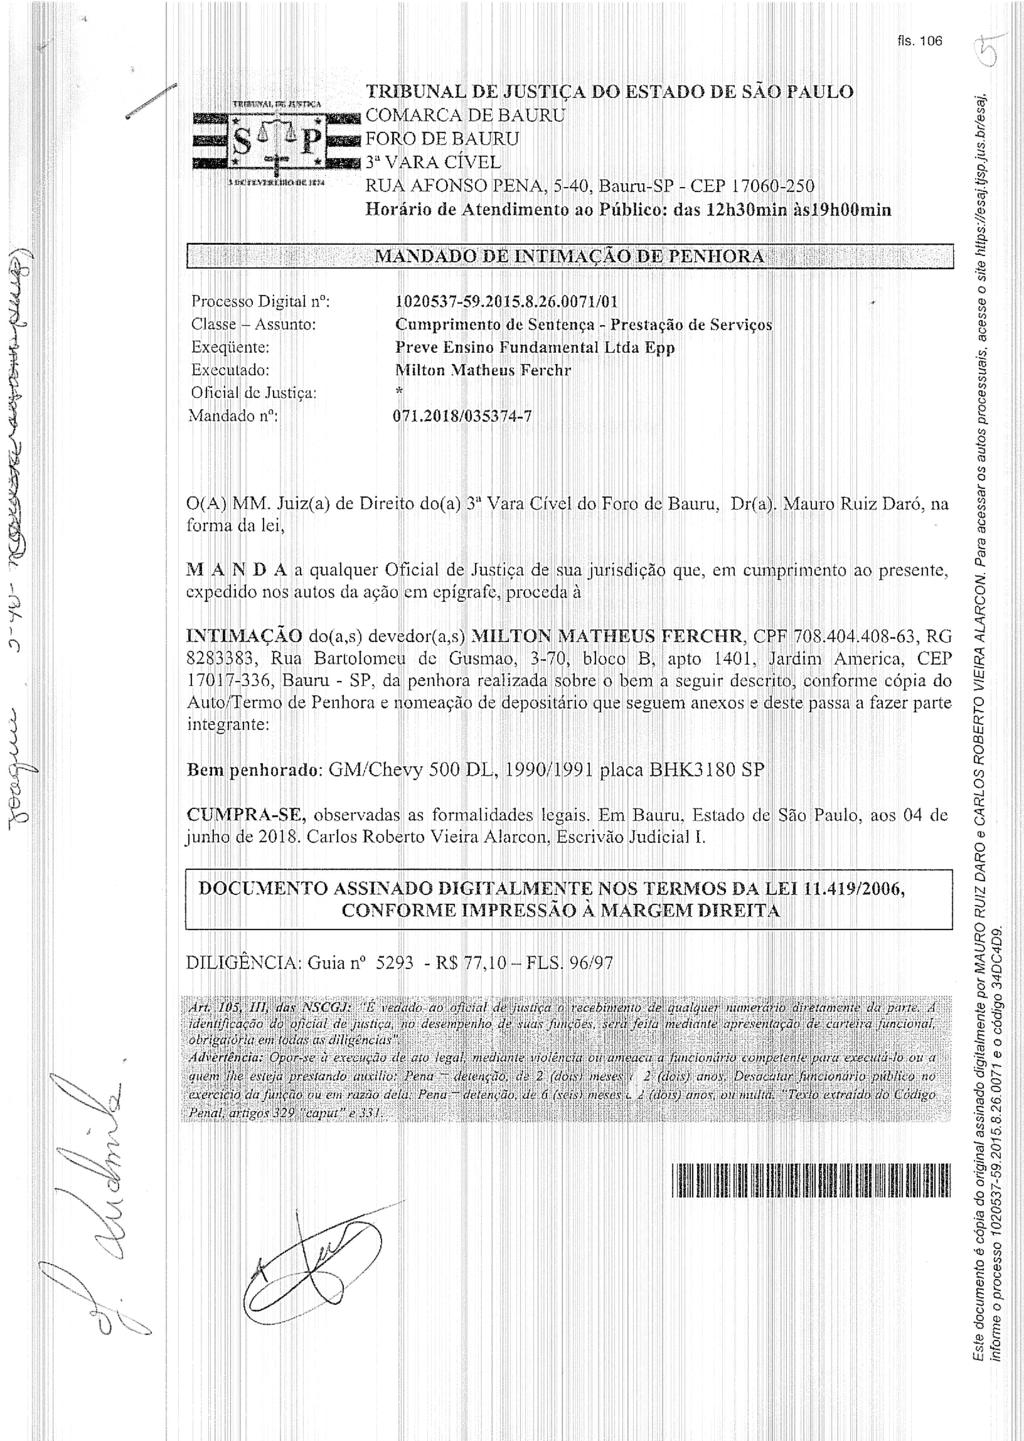 fls. 113 Este documento é cópia do original, assinado digitalmente por AMANDA CASTILHO QUAGGIO, liberado nos autos em 19/06/2018 às 15:41.